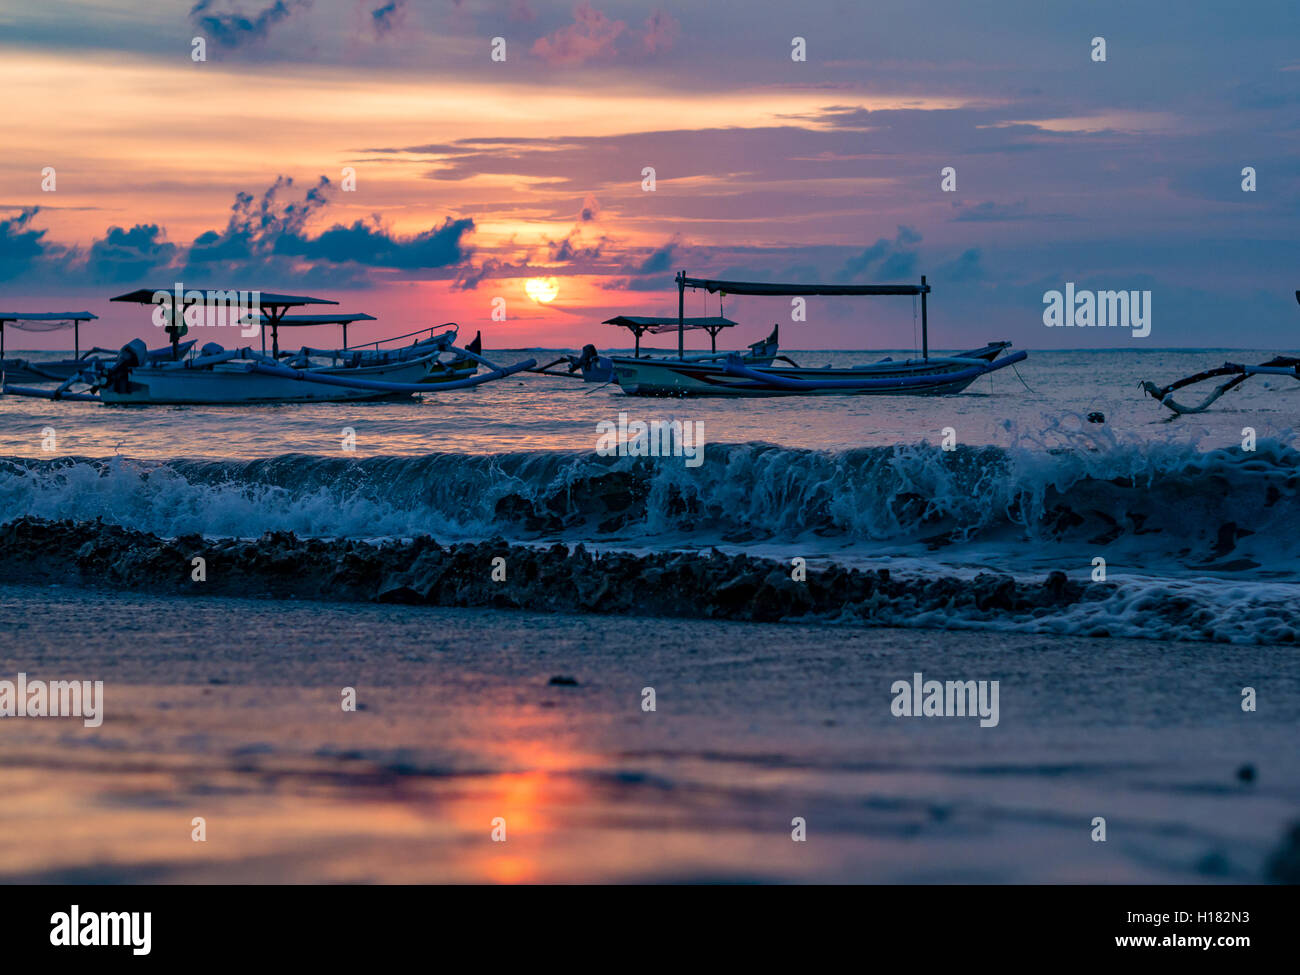 Navires Jukung balinais traditionnels à proximité sur la plage de Sanur, au lever du soleil, Bali, Indonésie Banque D'Images